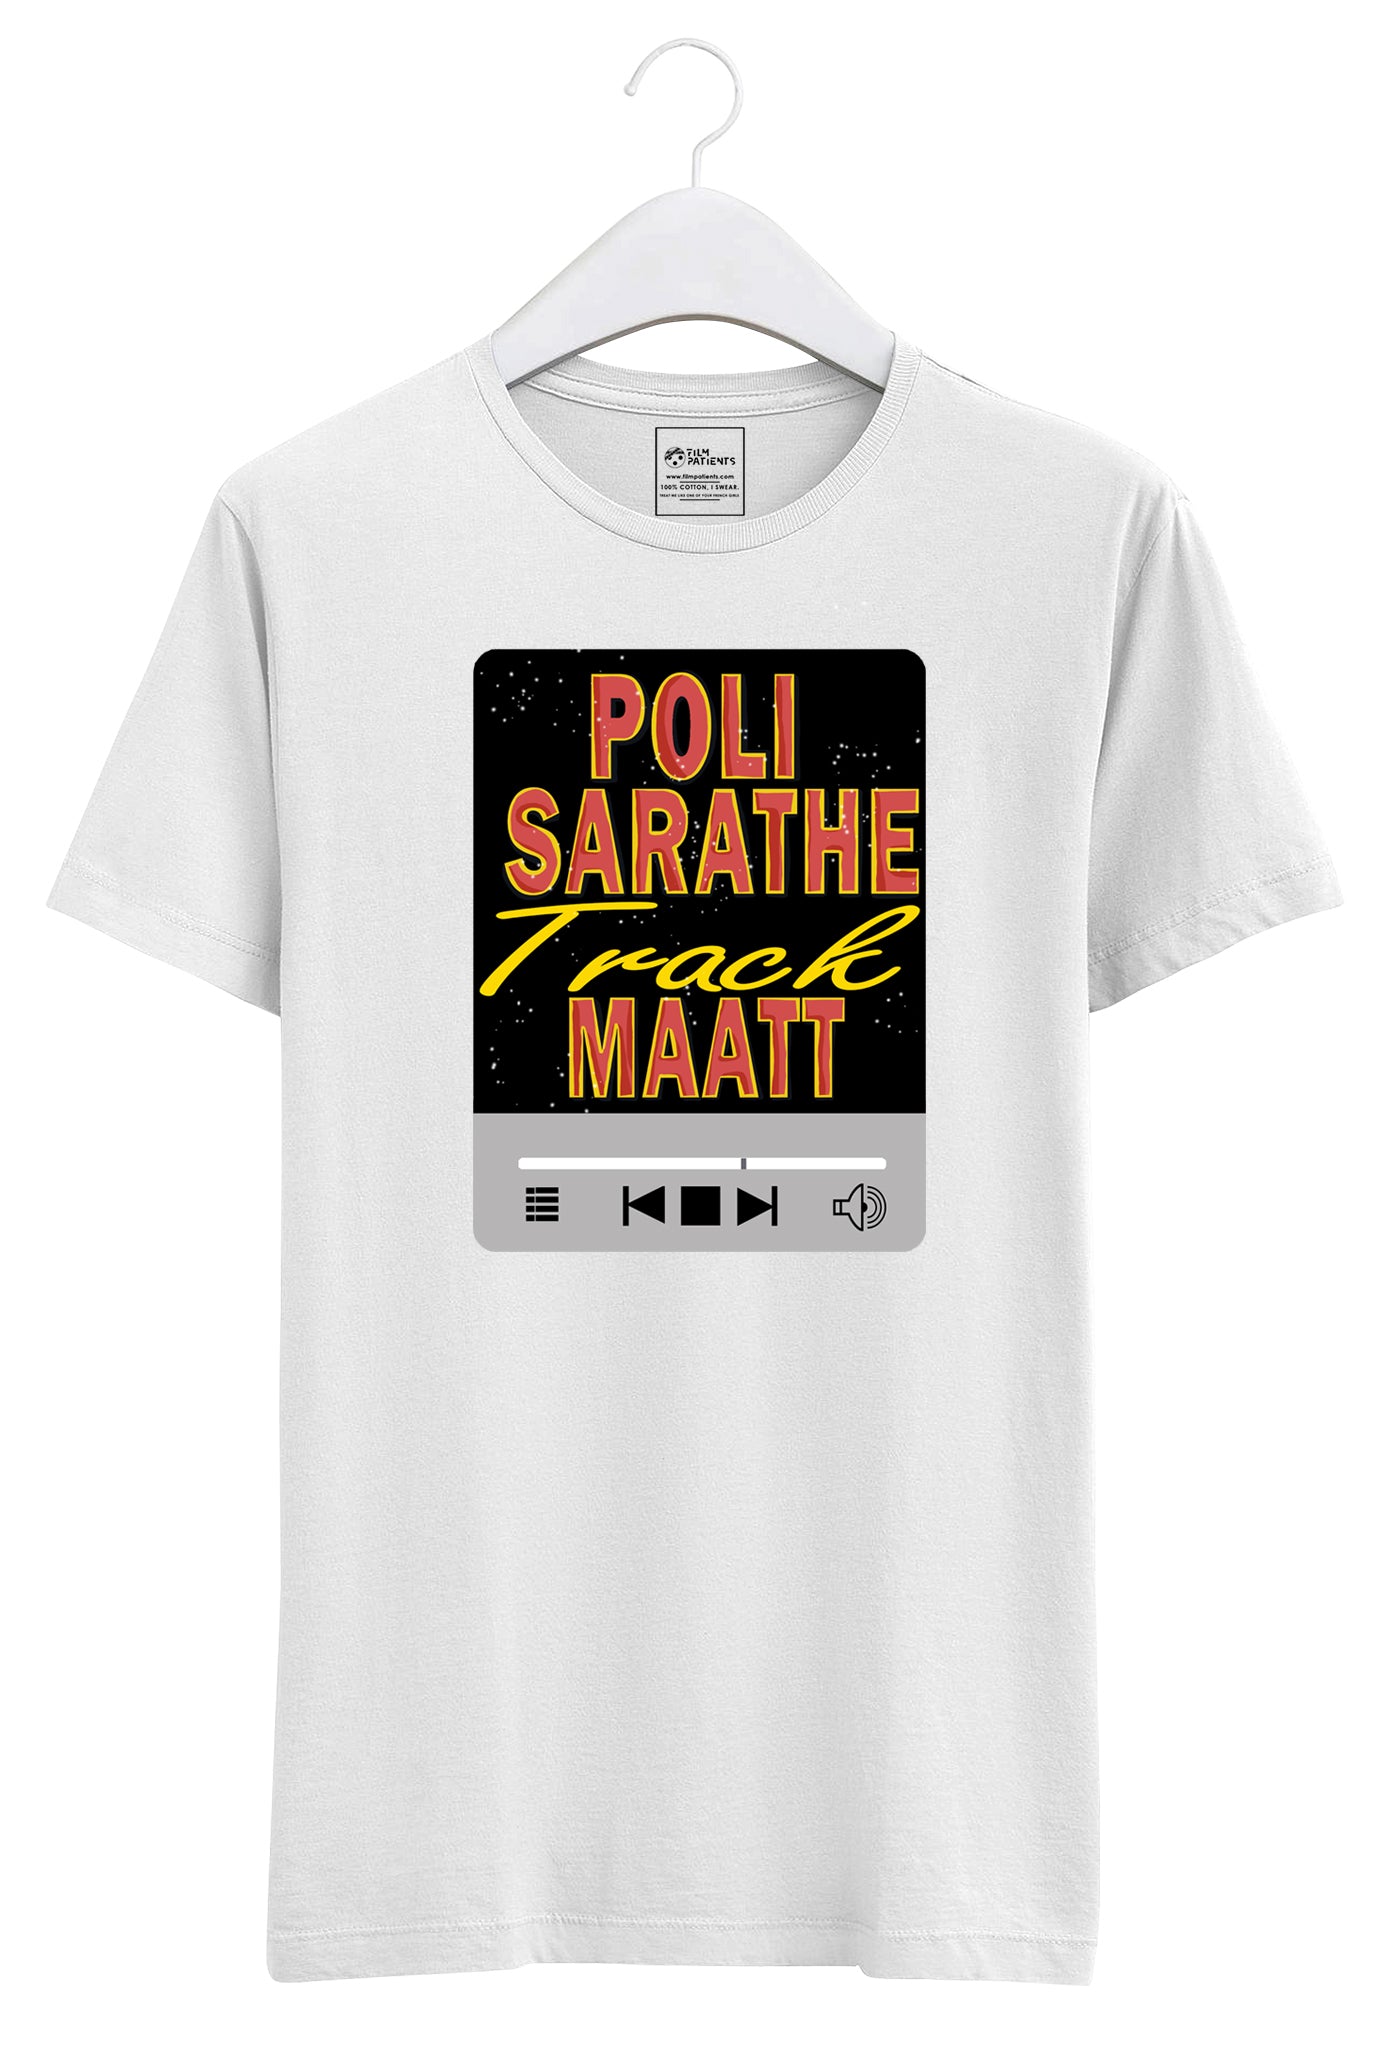 Buy Poli Sarathe Track Matt Tshirt Online